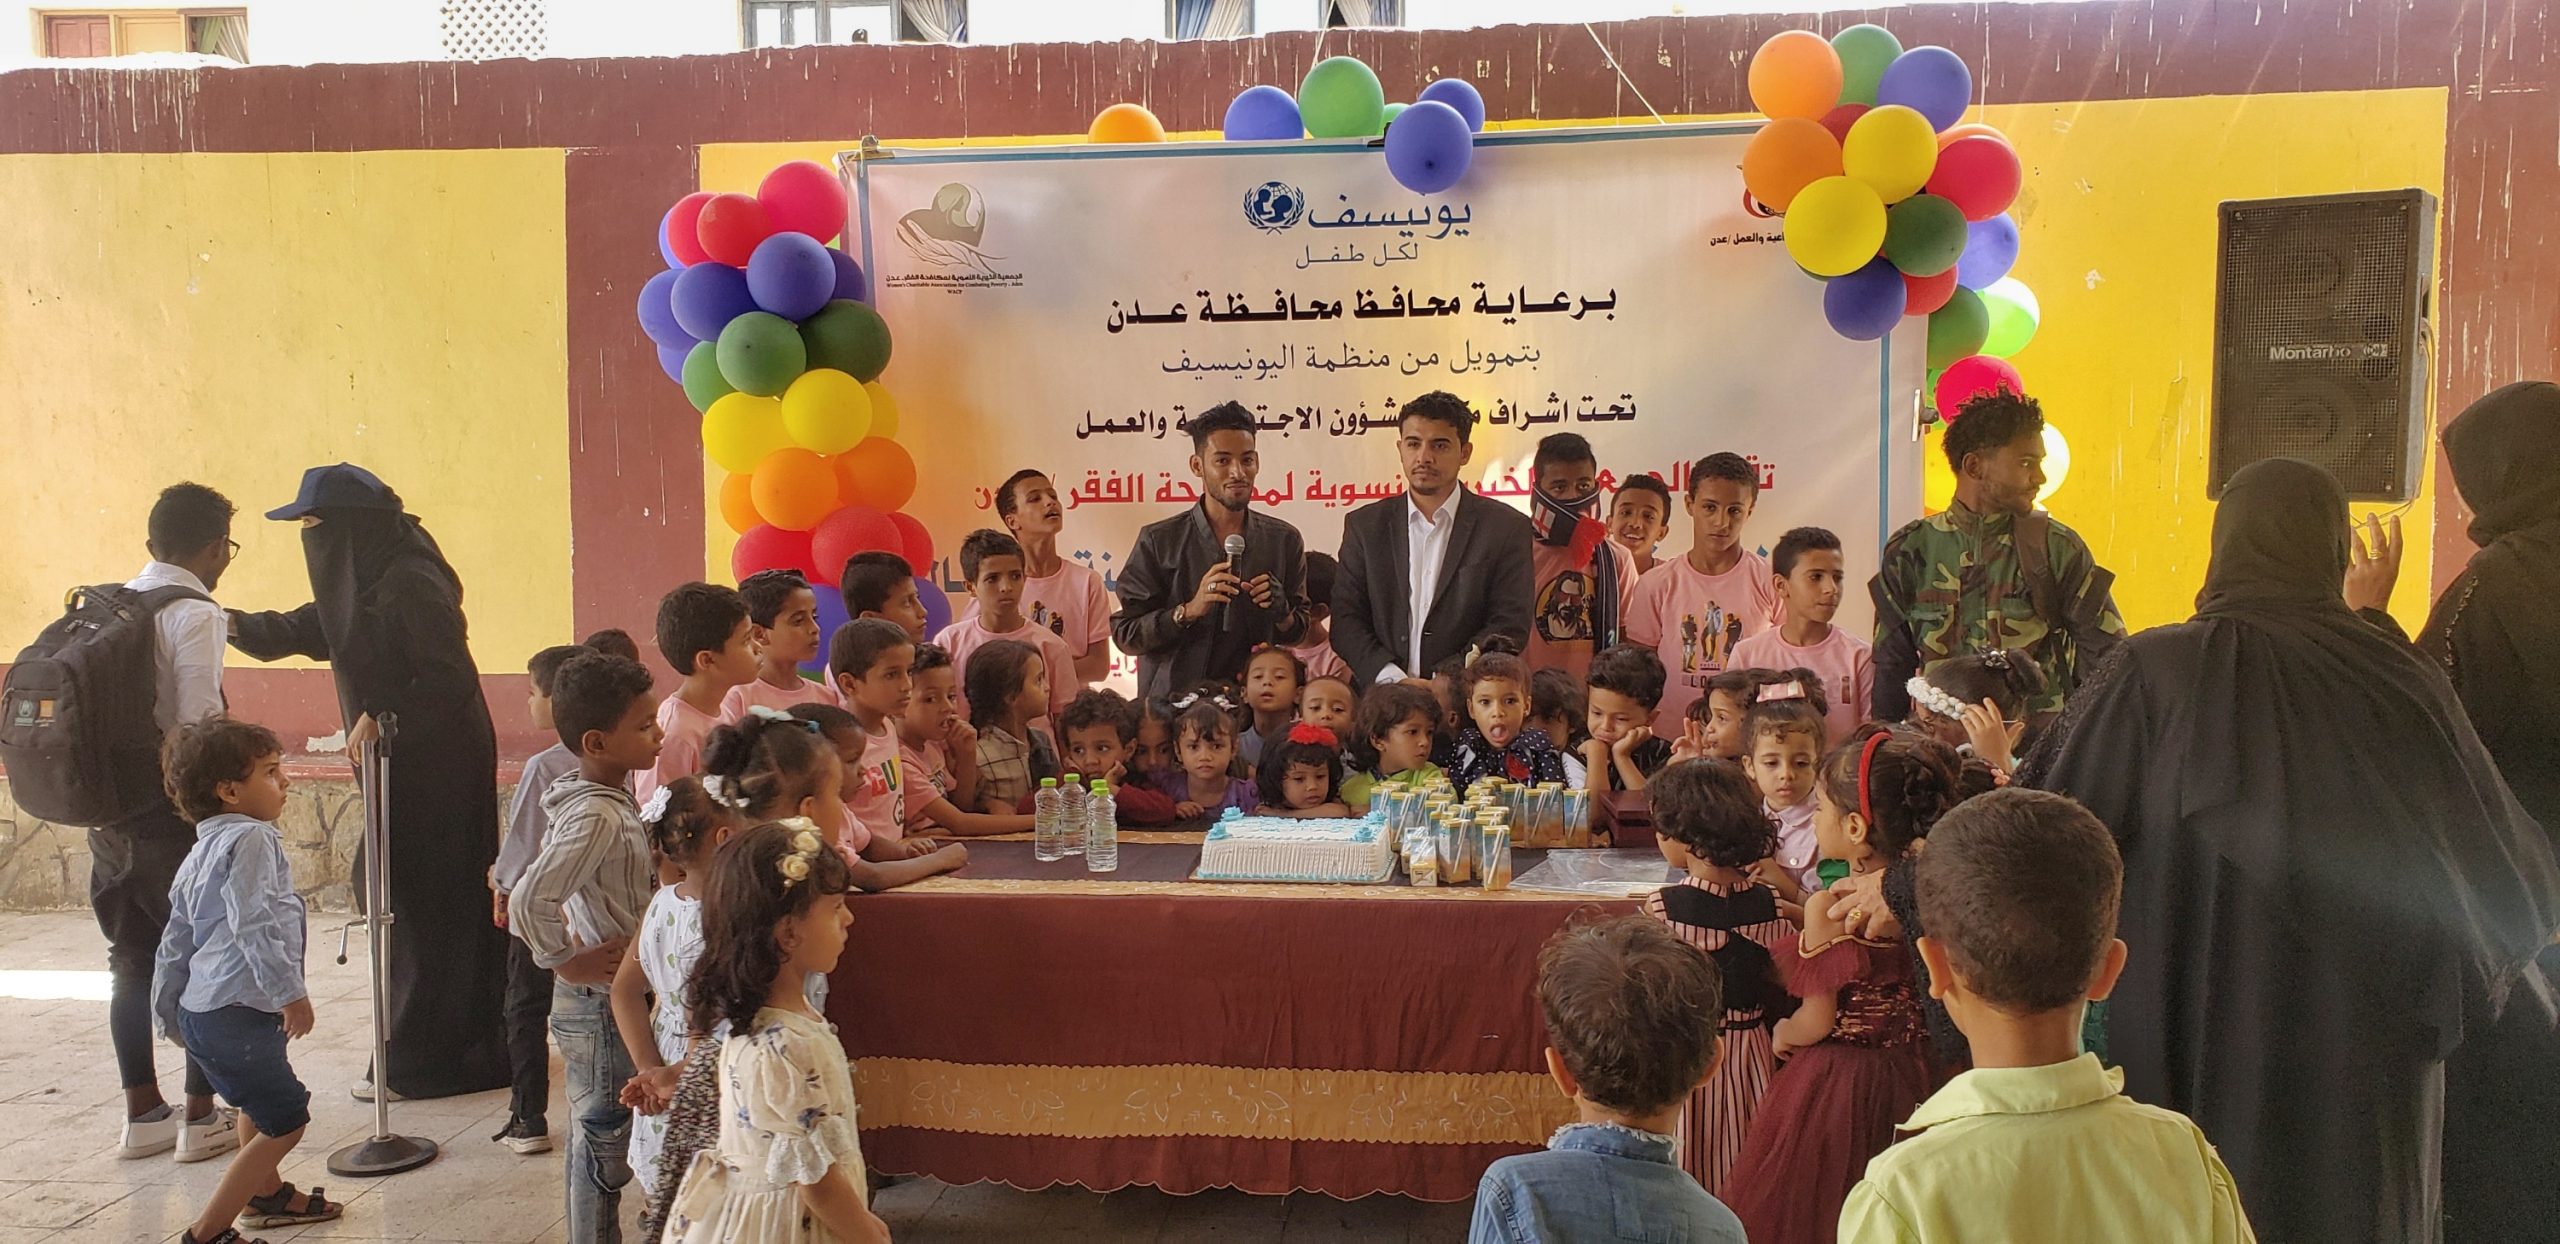 مركز الطفولة الآمنة يحتضن حفل اختتام مشروع المساحات الآمنة للأطفال بعدن